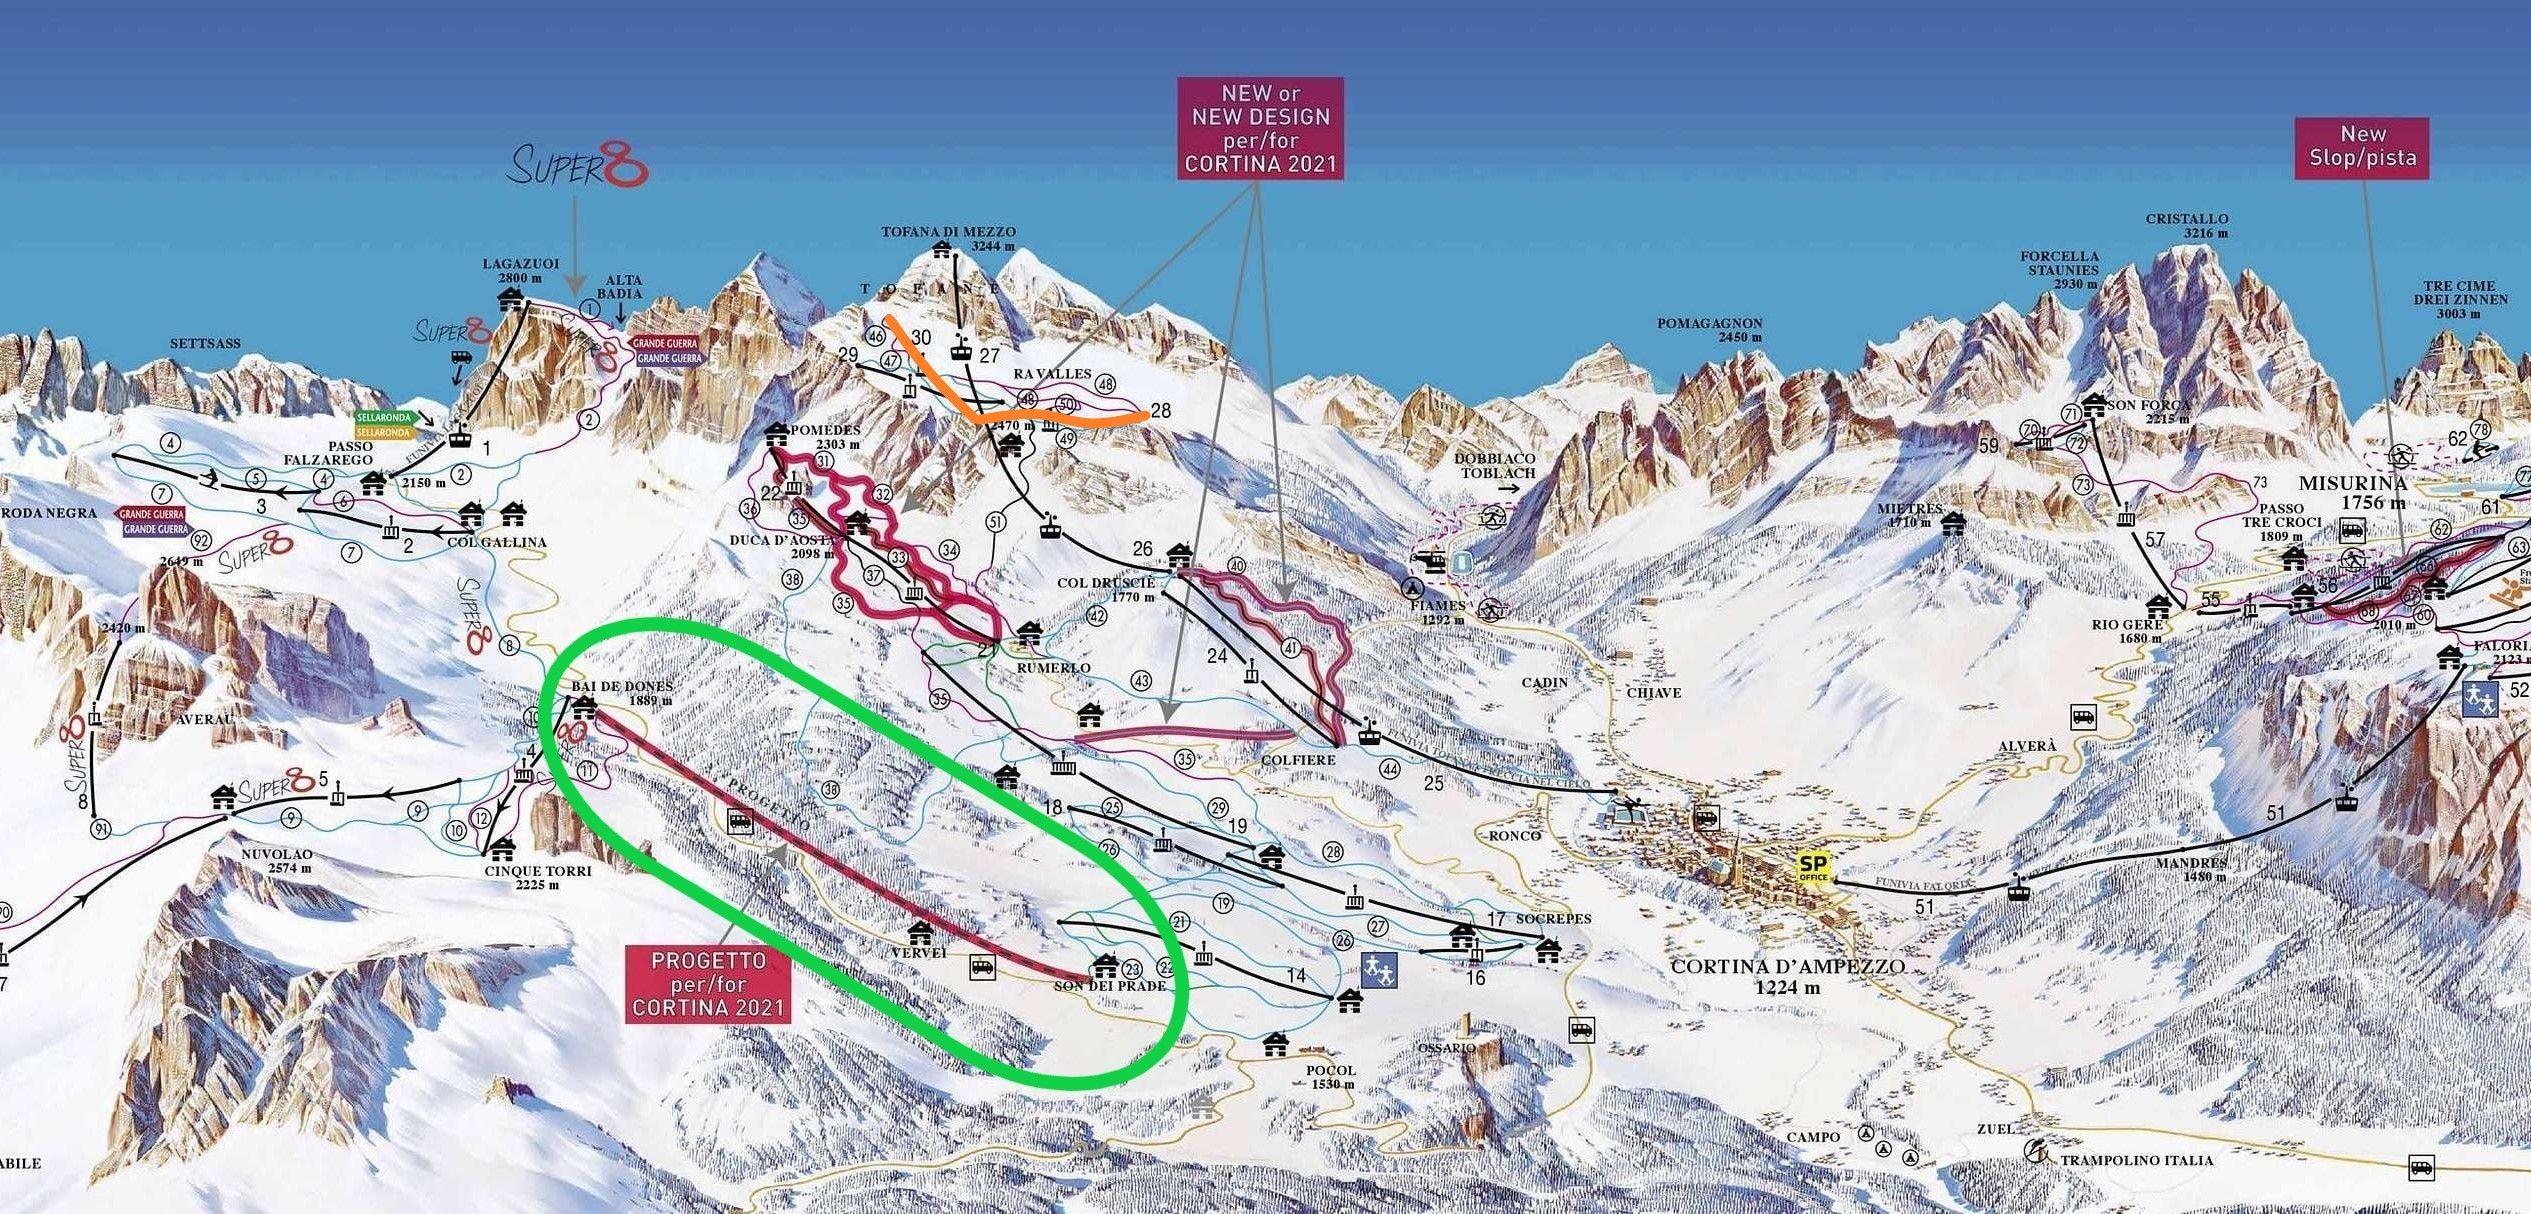 Een overzichtskaartje van alle vernieuwingen in Cortina. De nieuwe verbindingsgondel met Cinque Torri (groen omcirkeld), de nieuwe stoeltjeslift (oranje) en de nieuwe/aangepaste pistes (rood gearceerd)